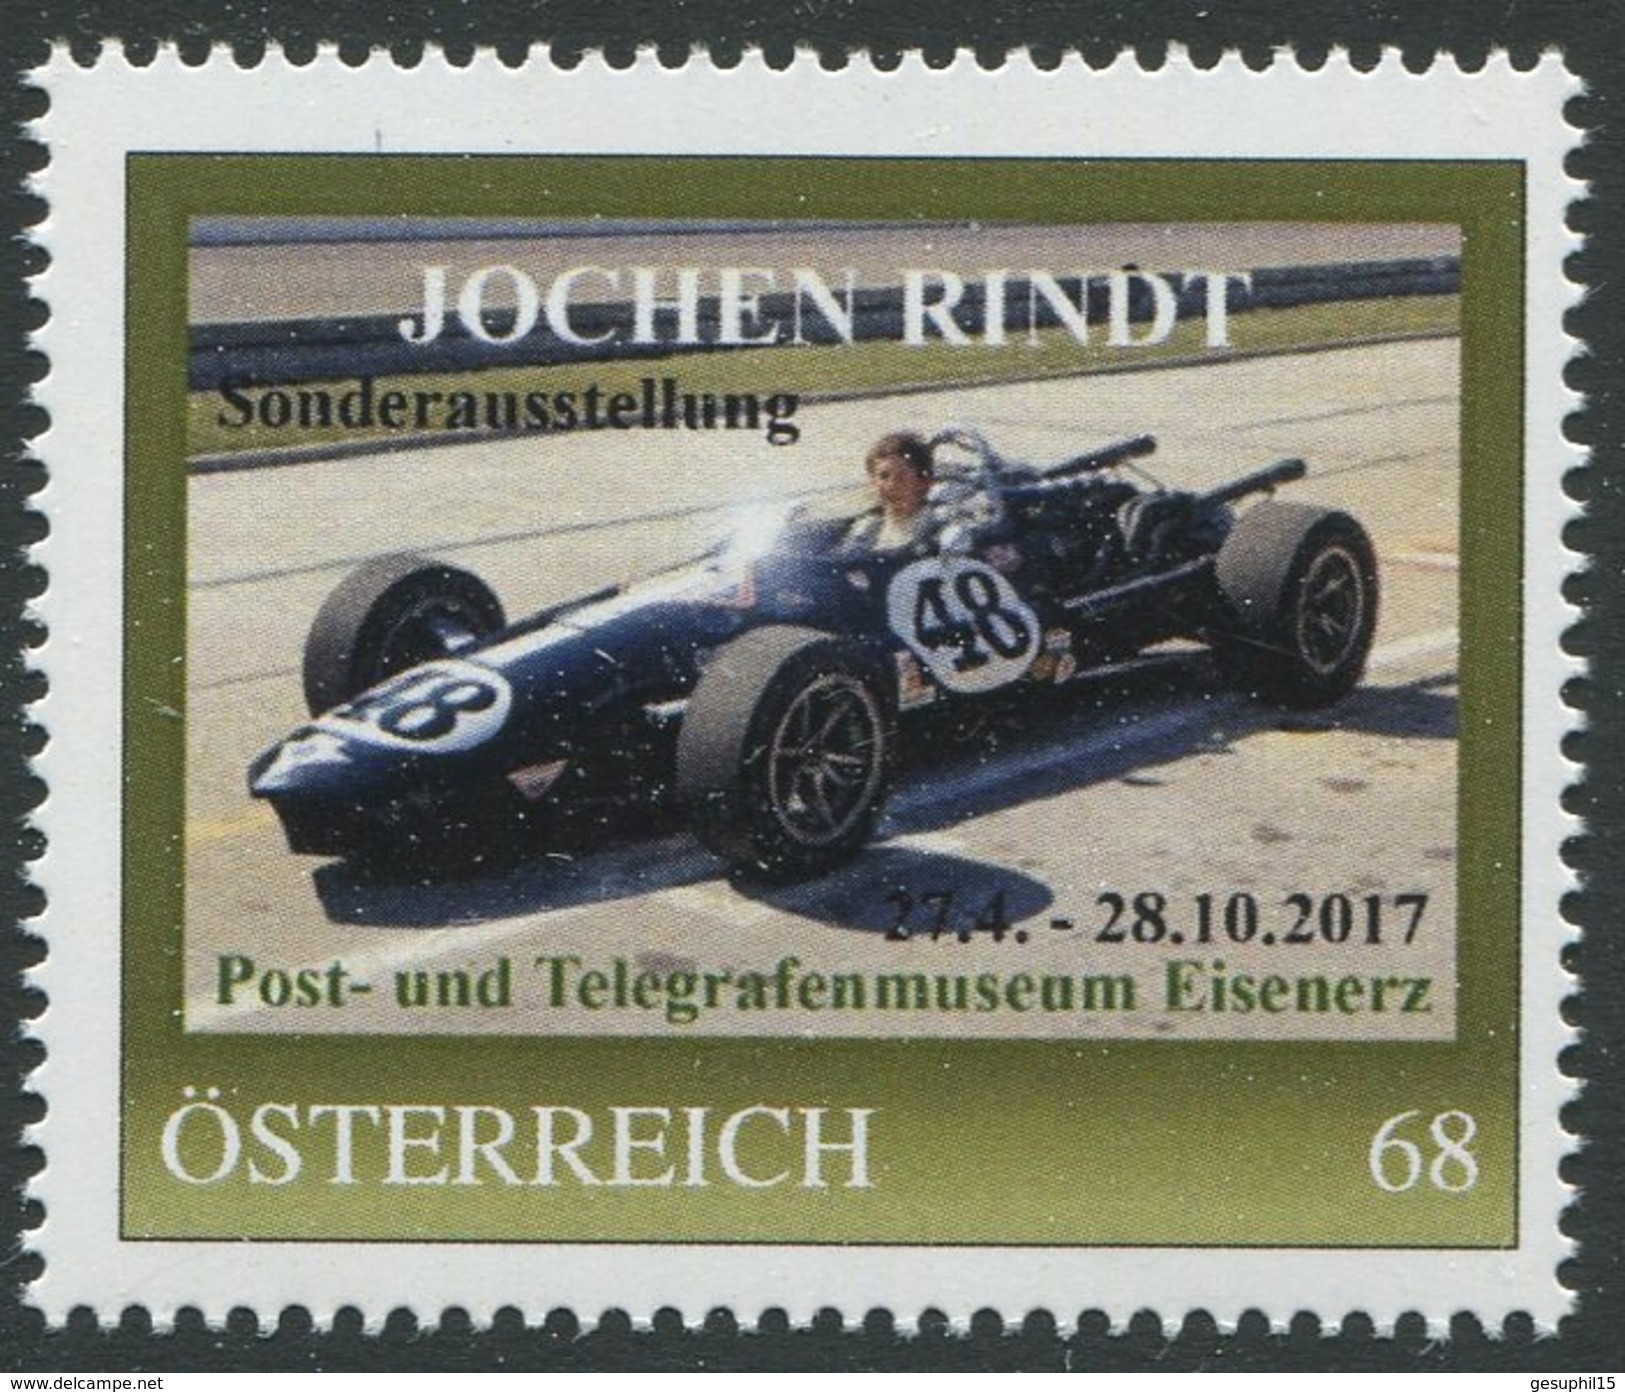 ÖSTERREICH / PM Nr. 8122692 / Jochen Rindt / Postfrisch / ** / MNH - Personalisierte Briefmarken